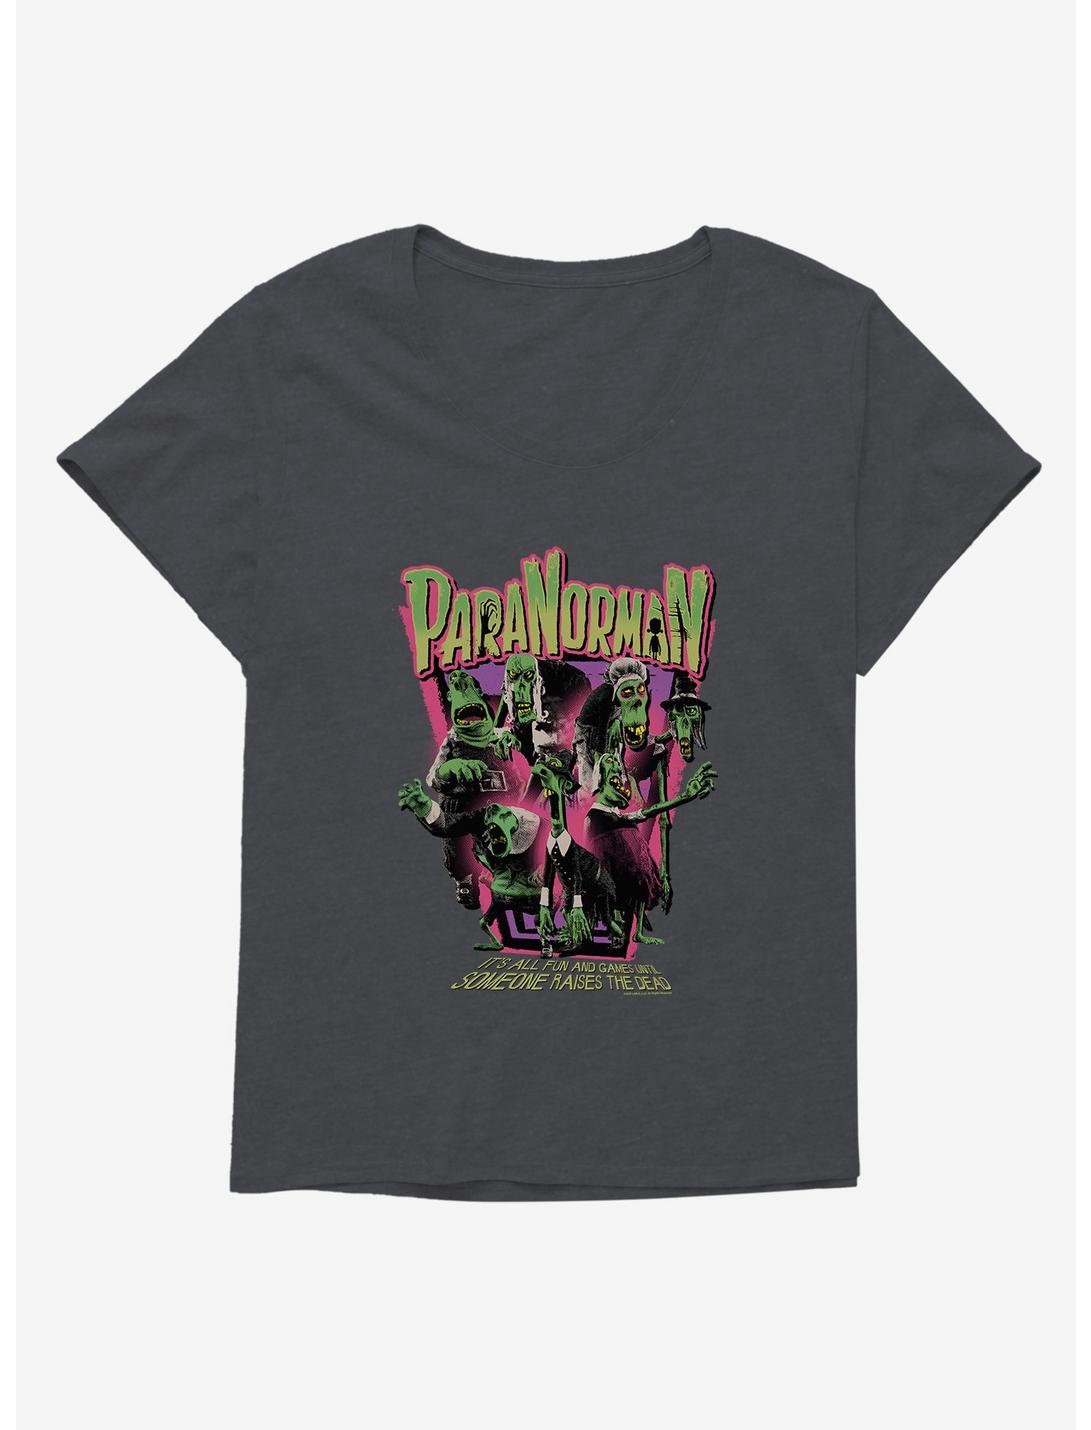 Paranorman Raises The Dead Girls T-Shirt Plus Size, , hi-res